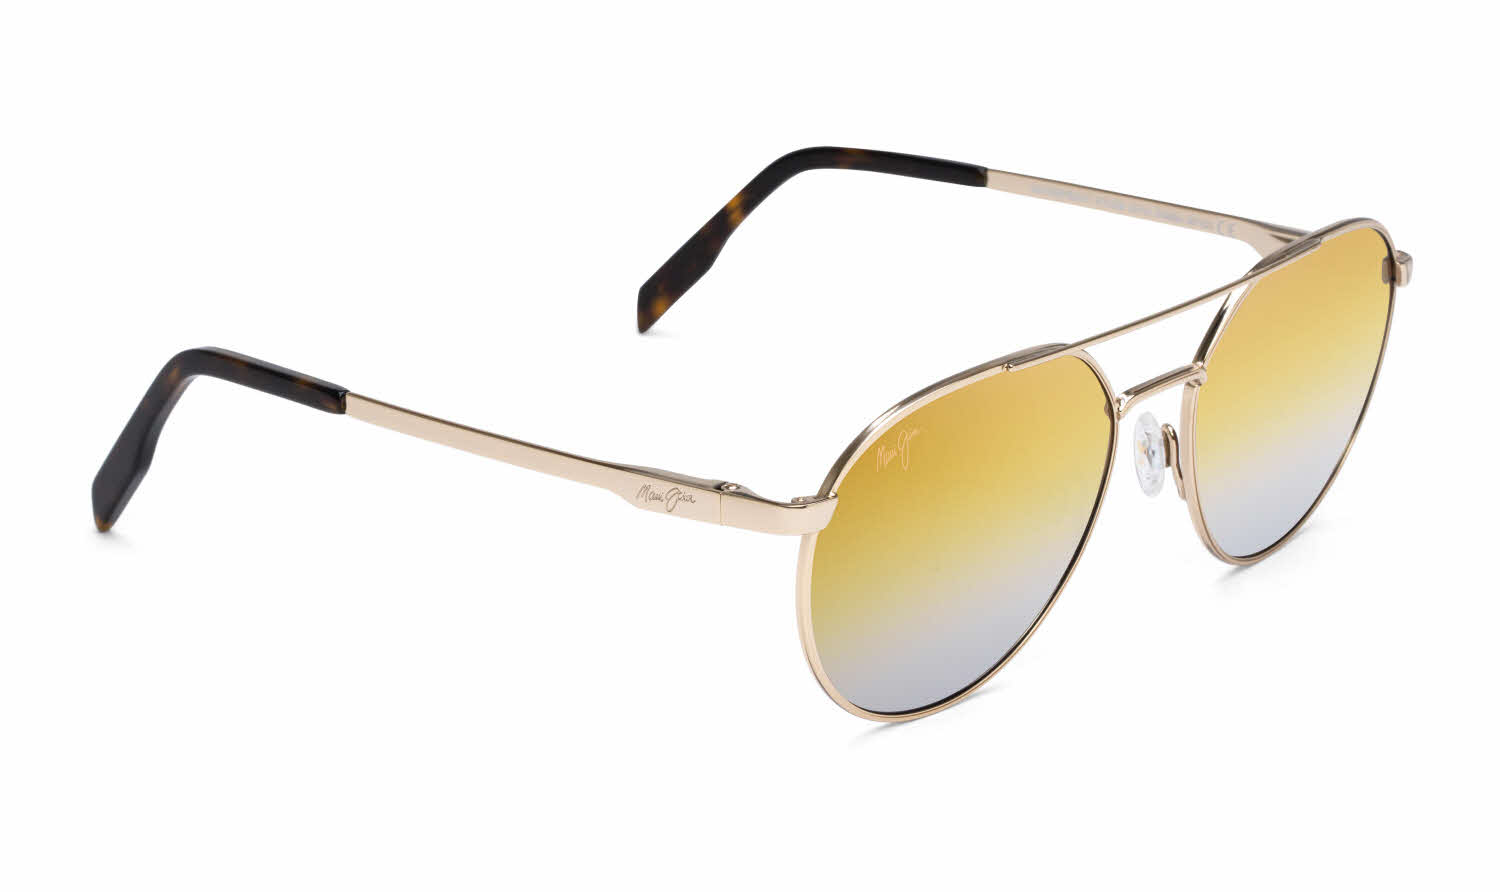 Maui Jim Waterfront-830 Sunglasses